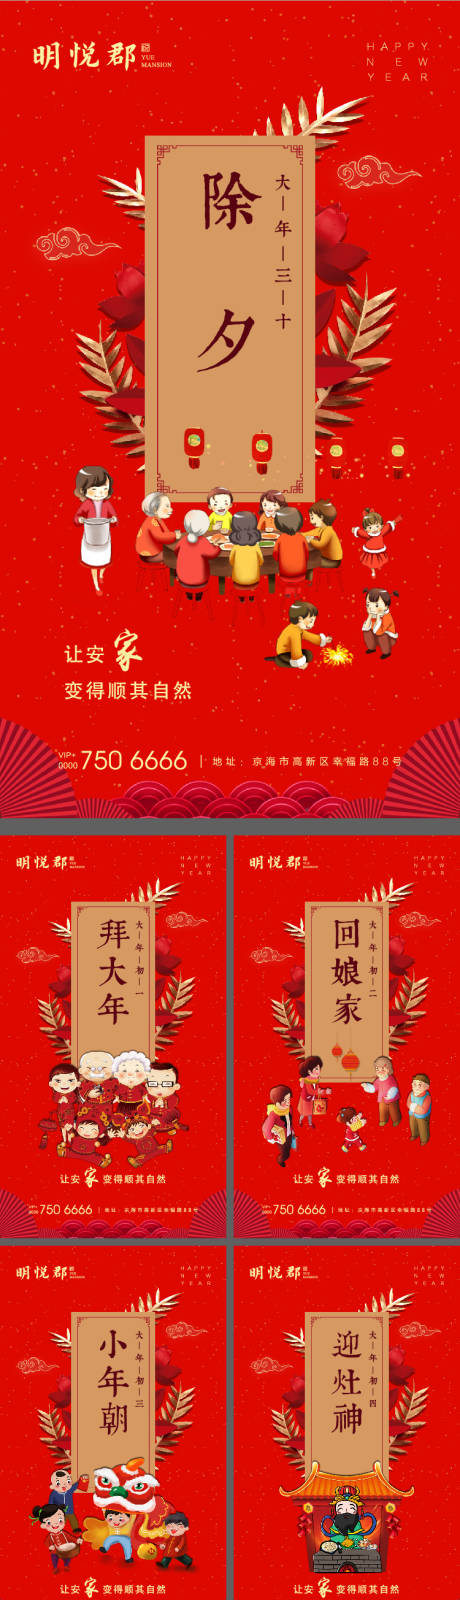 春节除夕拜年系列海报